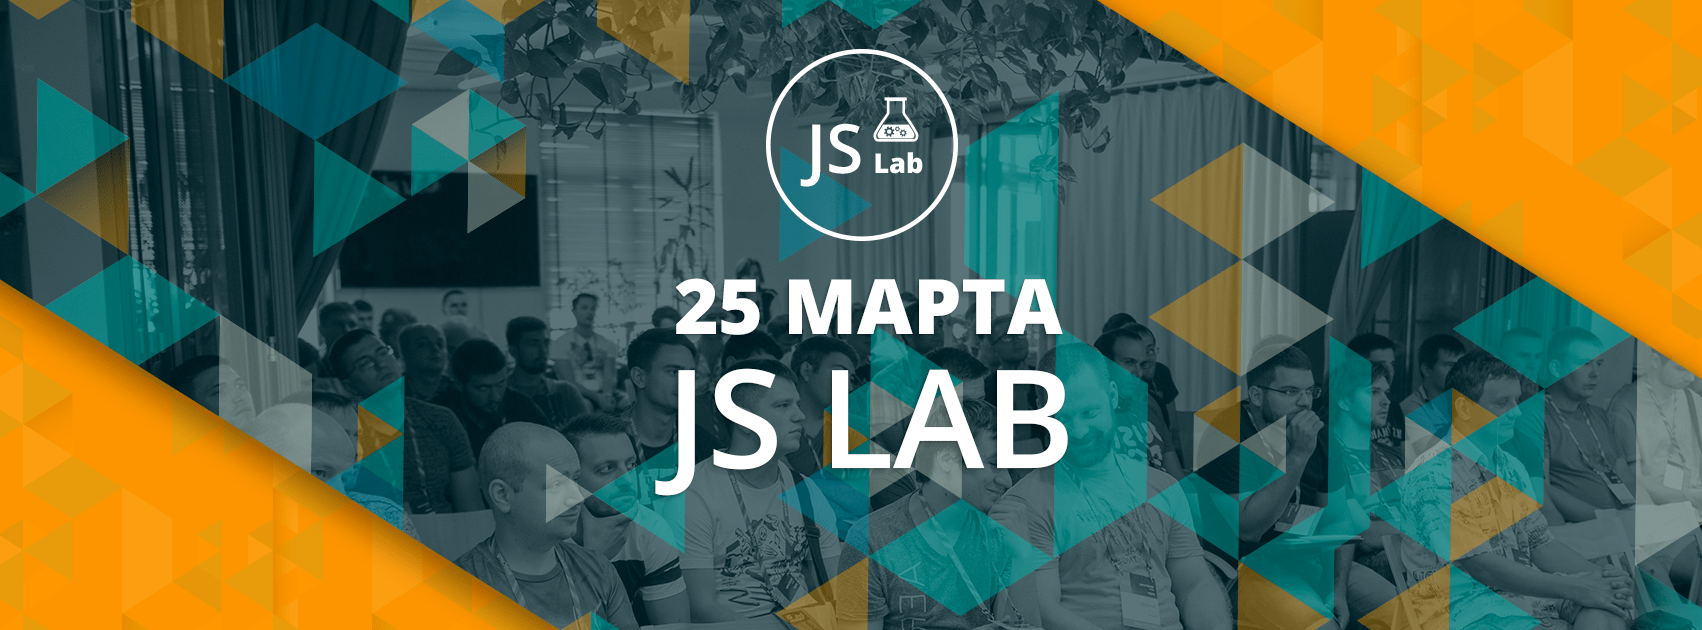 Третья конференция JavaScript-разработчиков в Одессе — JS Lab - 1